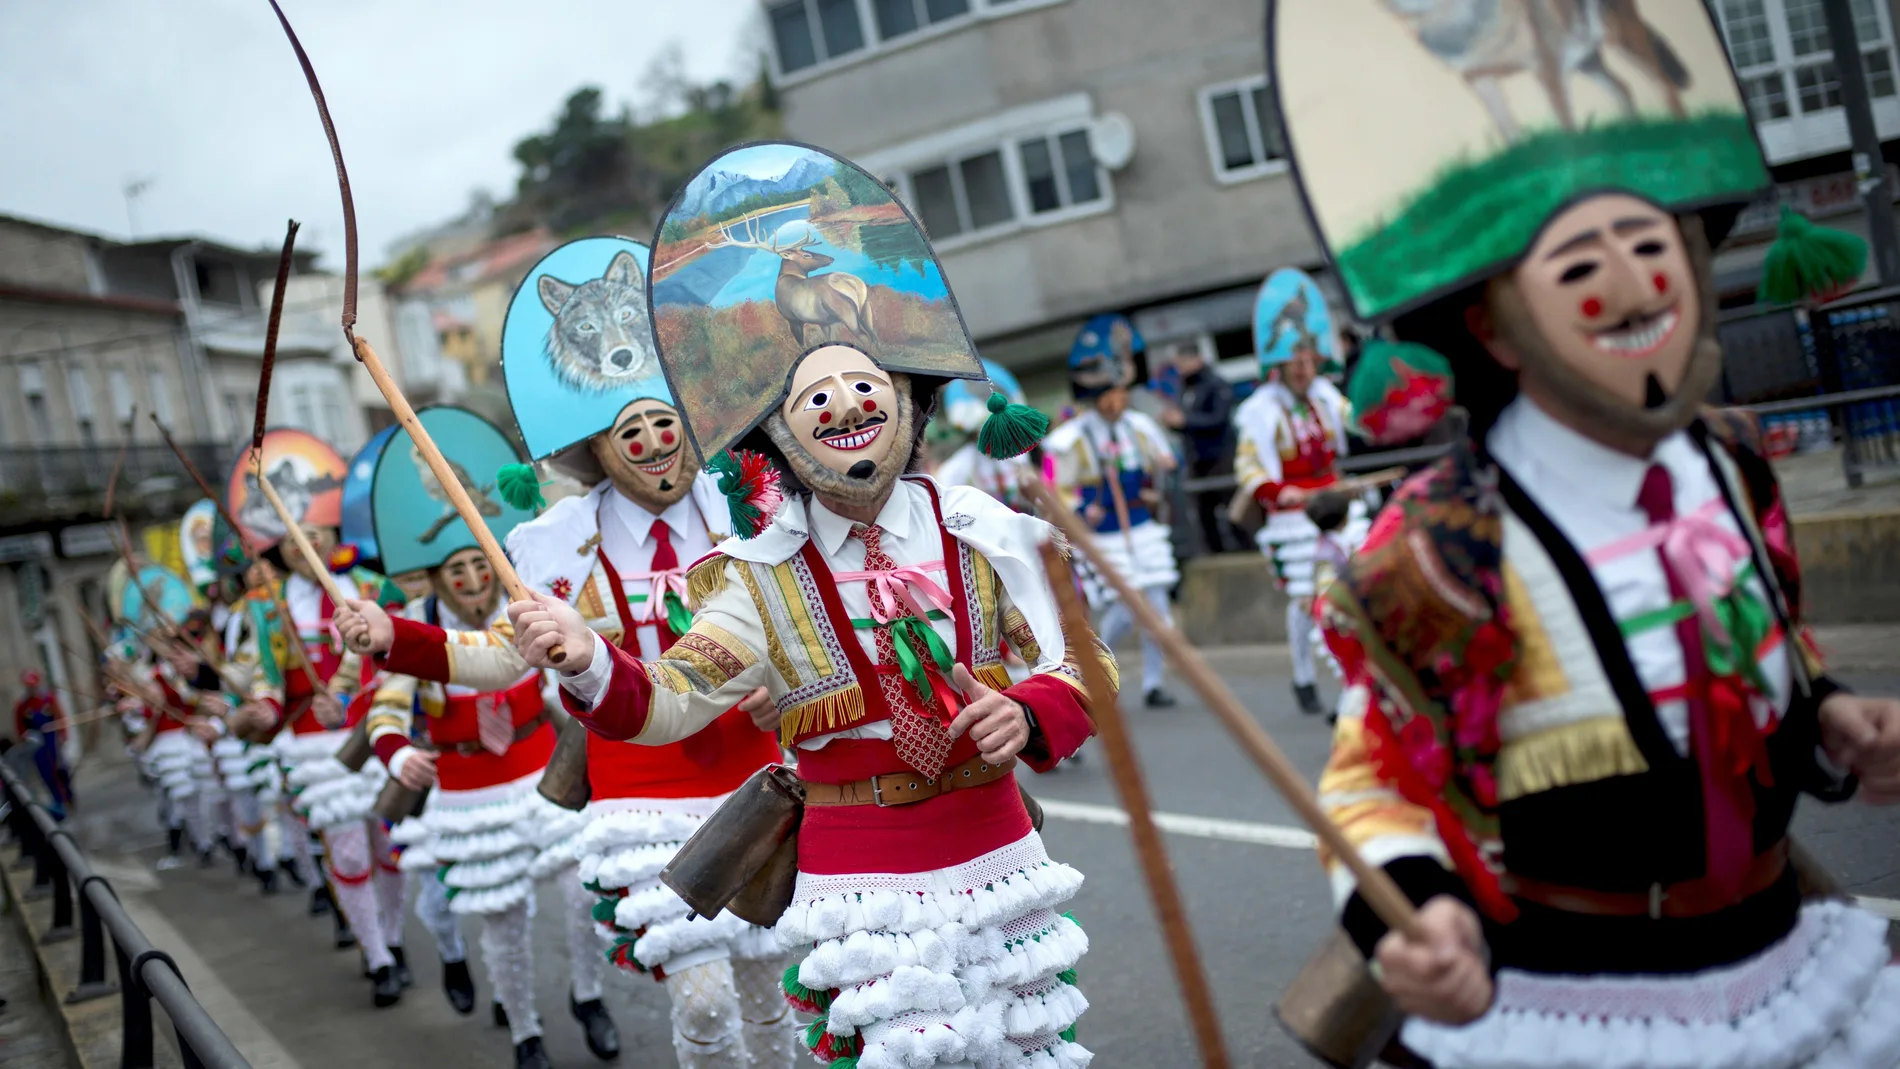 Toda Galicia es famosa por su carnaval, pero el triángulo imprescindible está formado por Laza, Verín y Xinzo de Limia